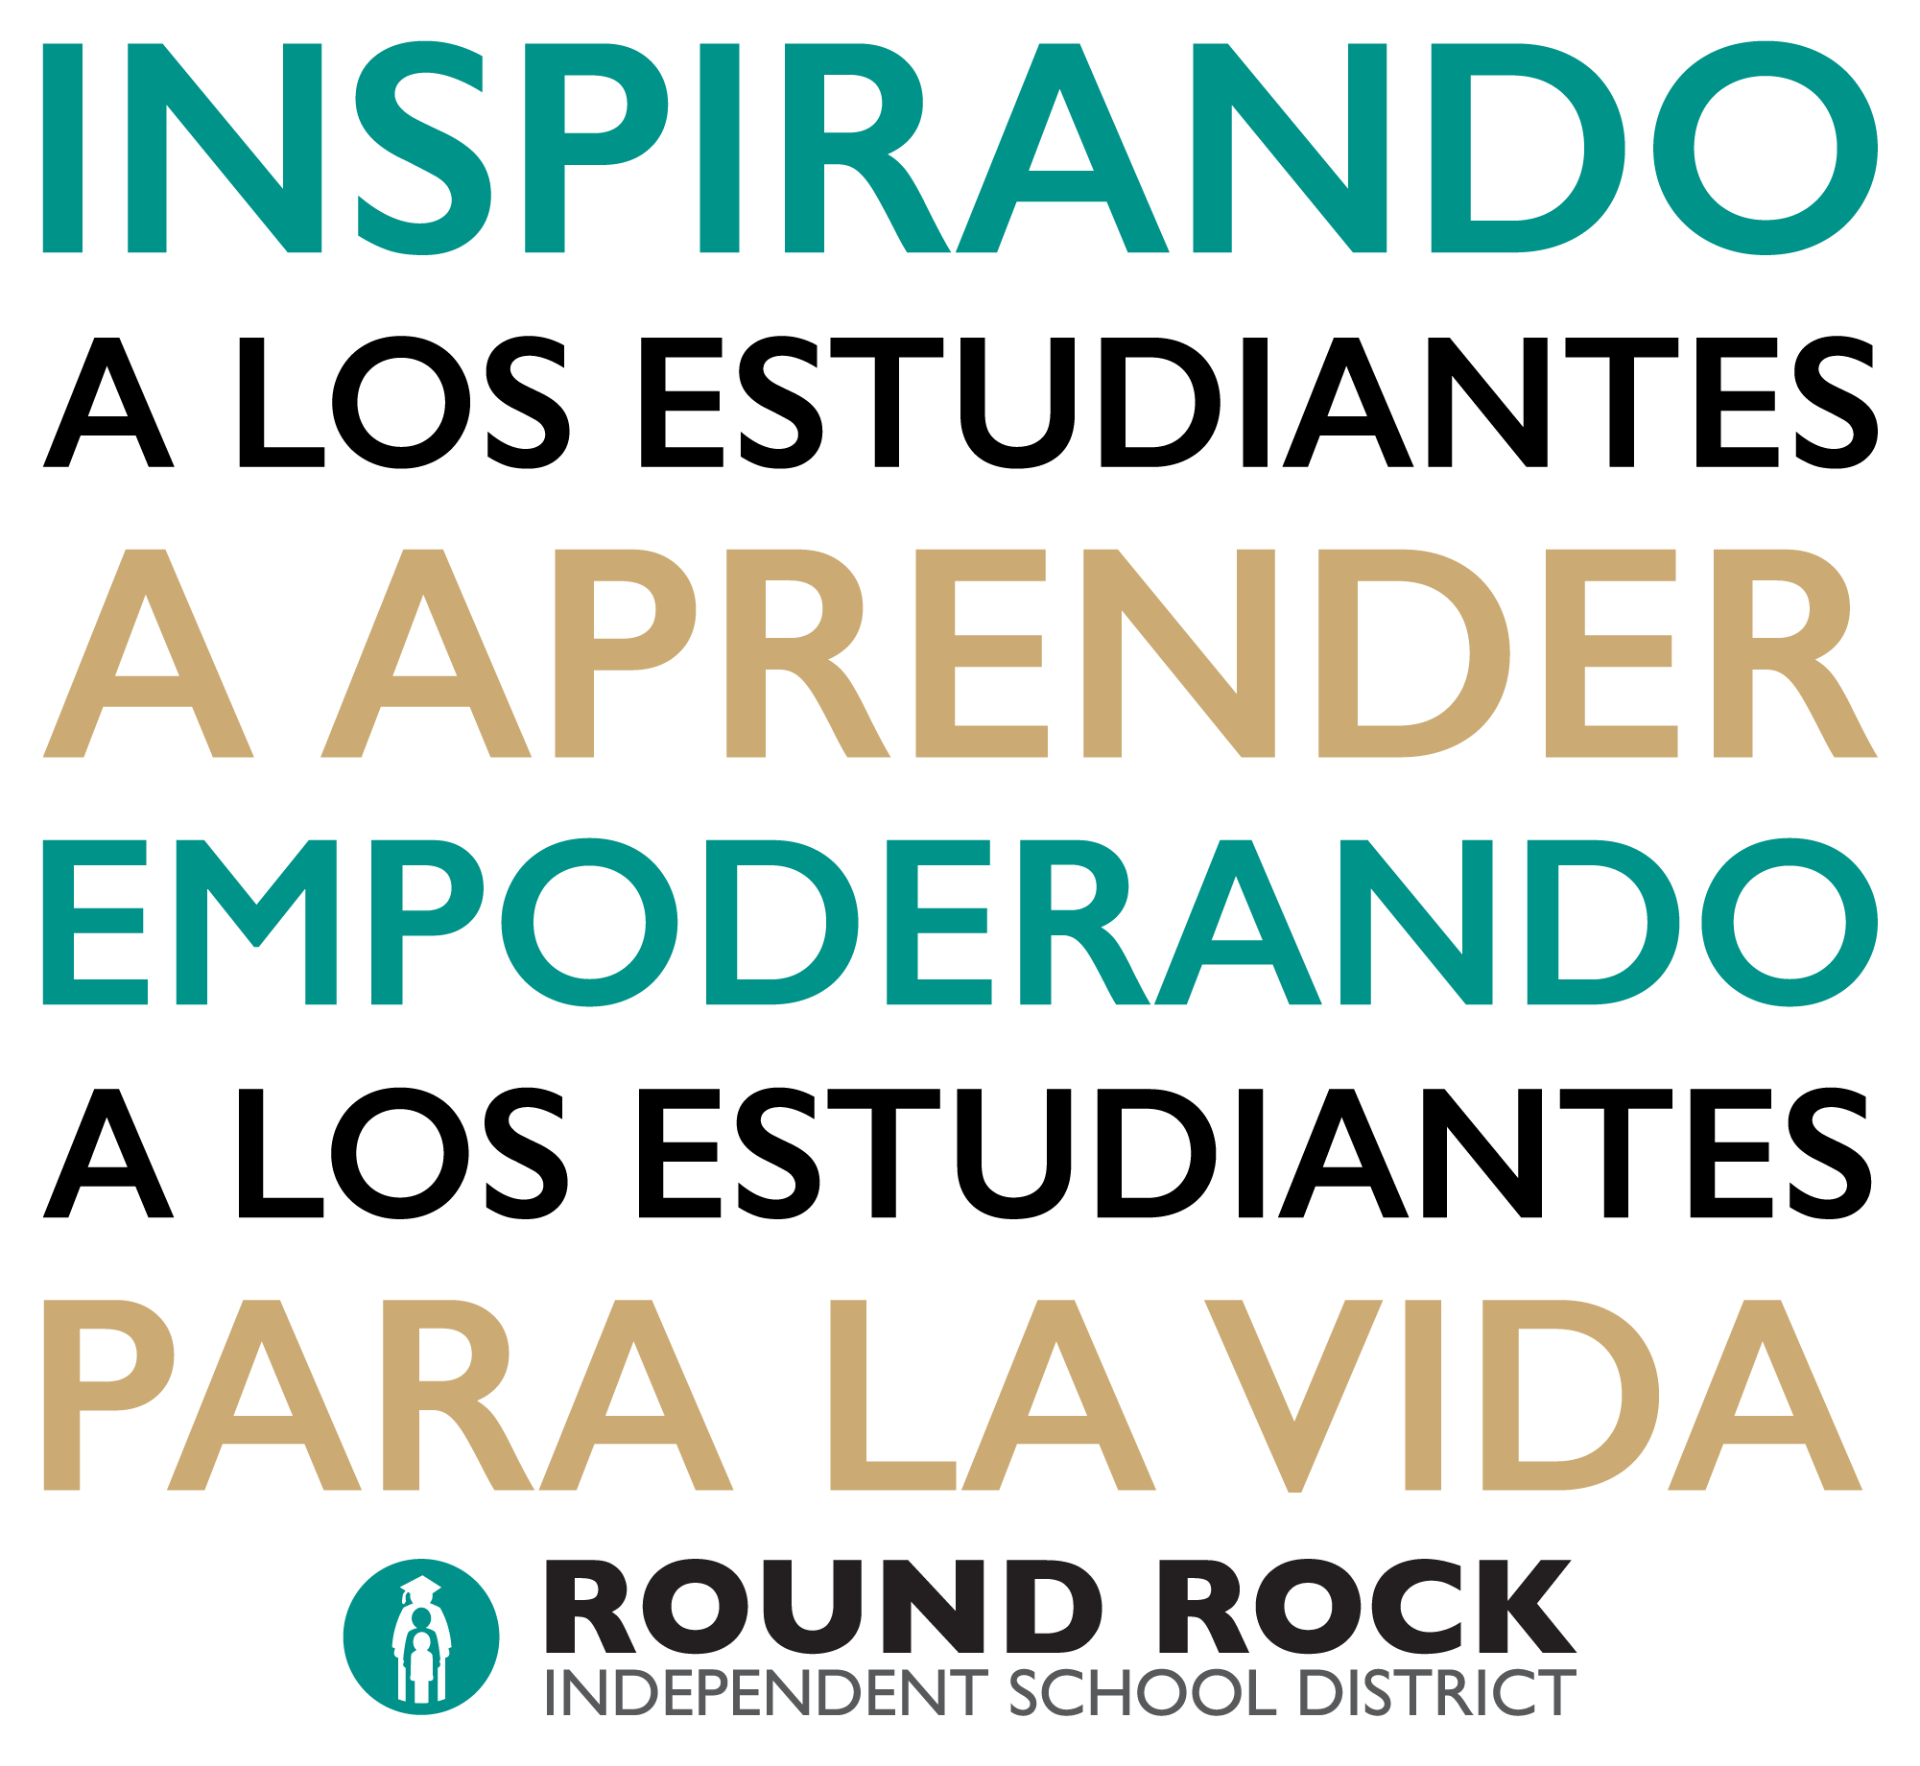 Inspirando a los estudiantes a aprender empoderando a los estudiantes para la vida. Round Rock ISD